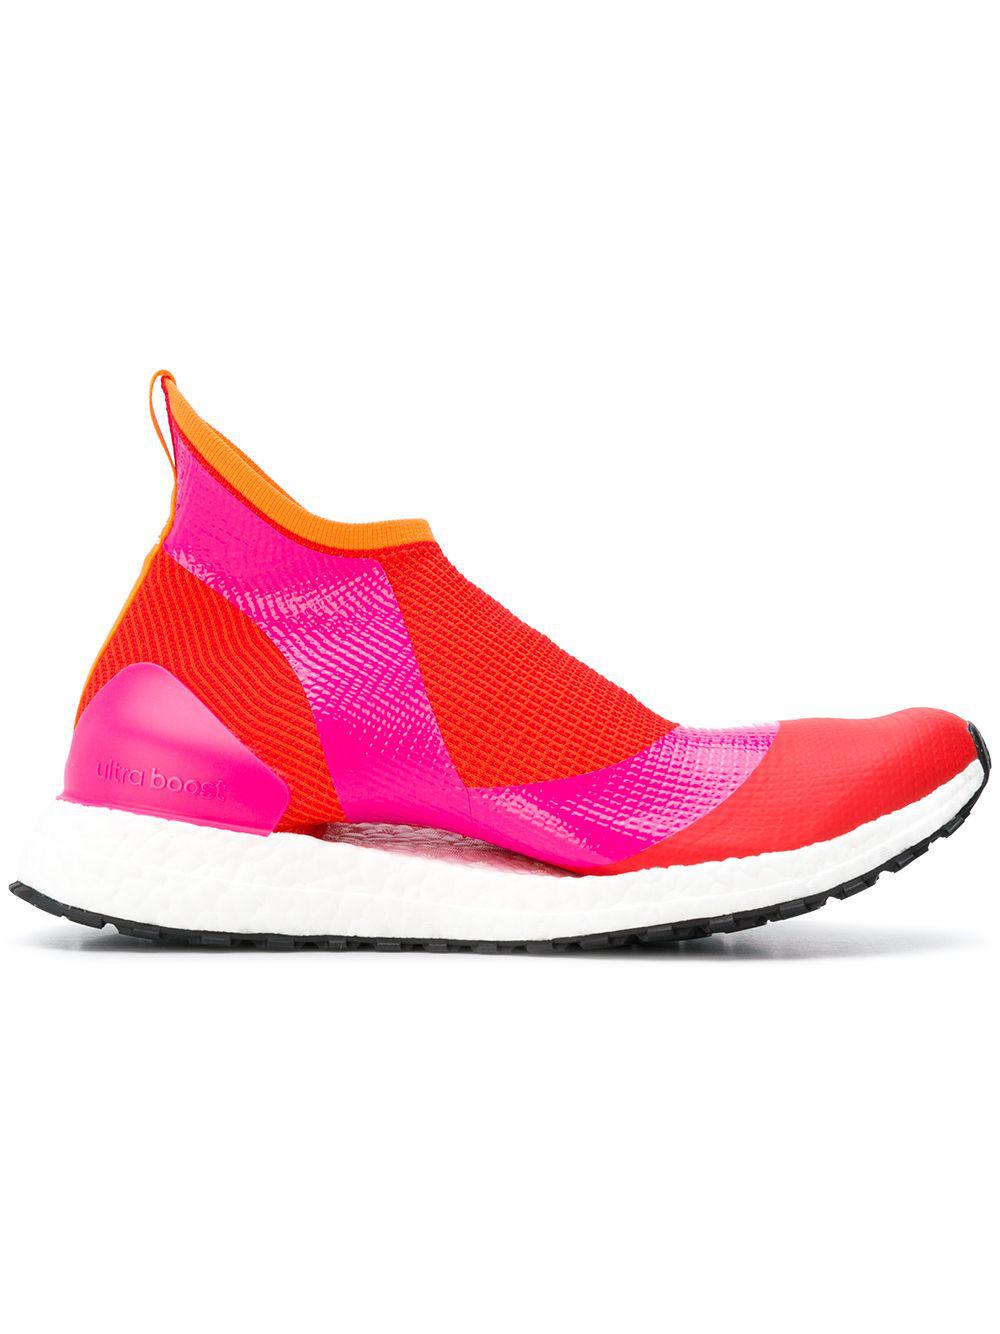 adidas By Stella McCartney Rubber Ultraboost Atr44 Shock Pink Women's Sneakers - Lyst